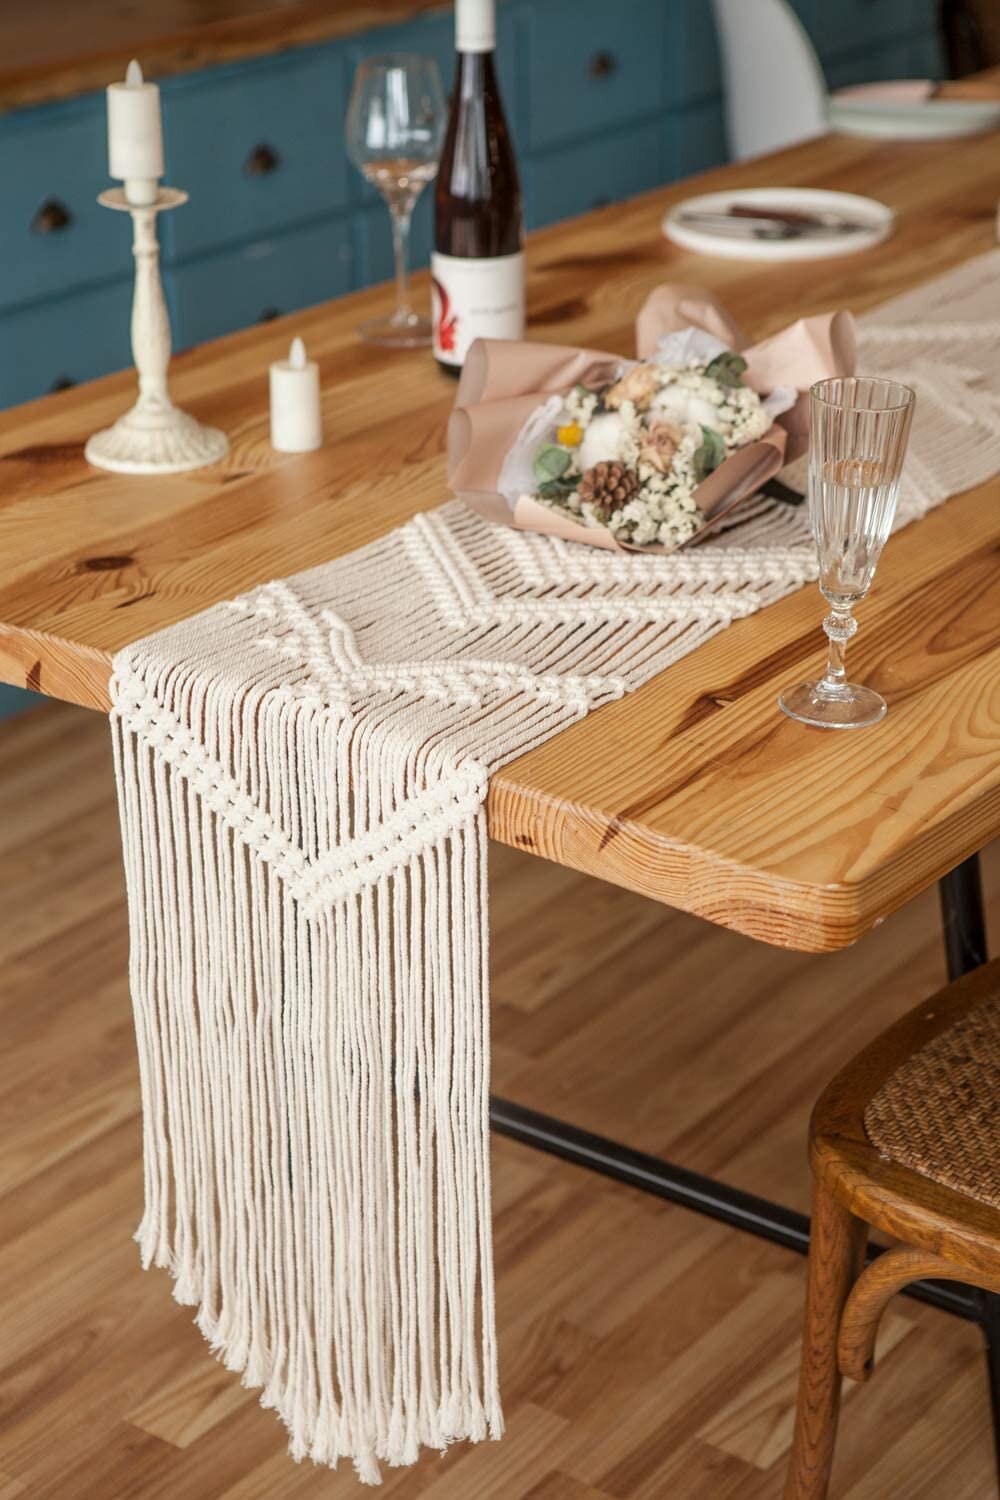 Macrame woven table runner.jpg